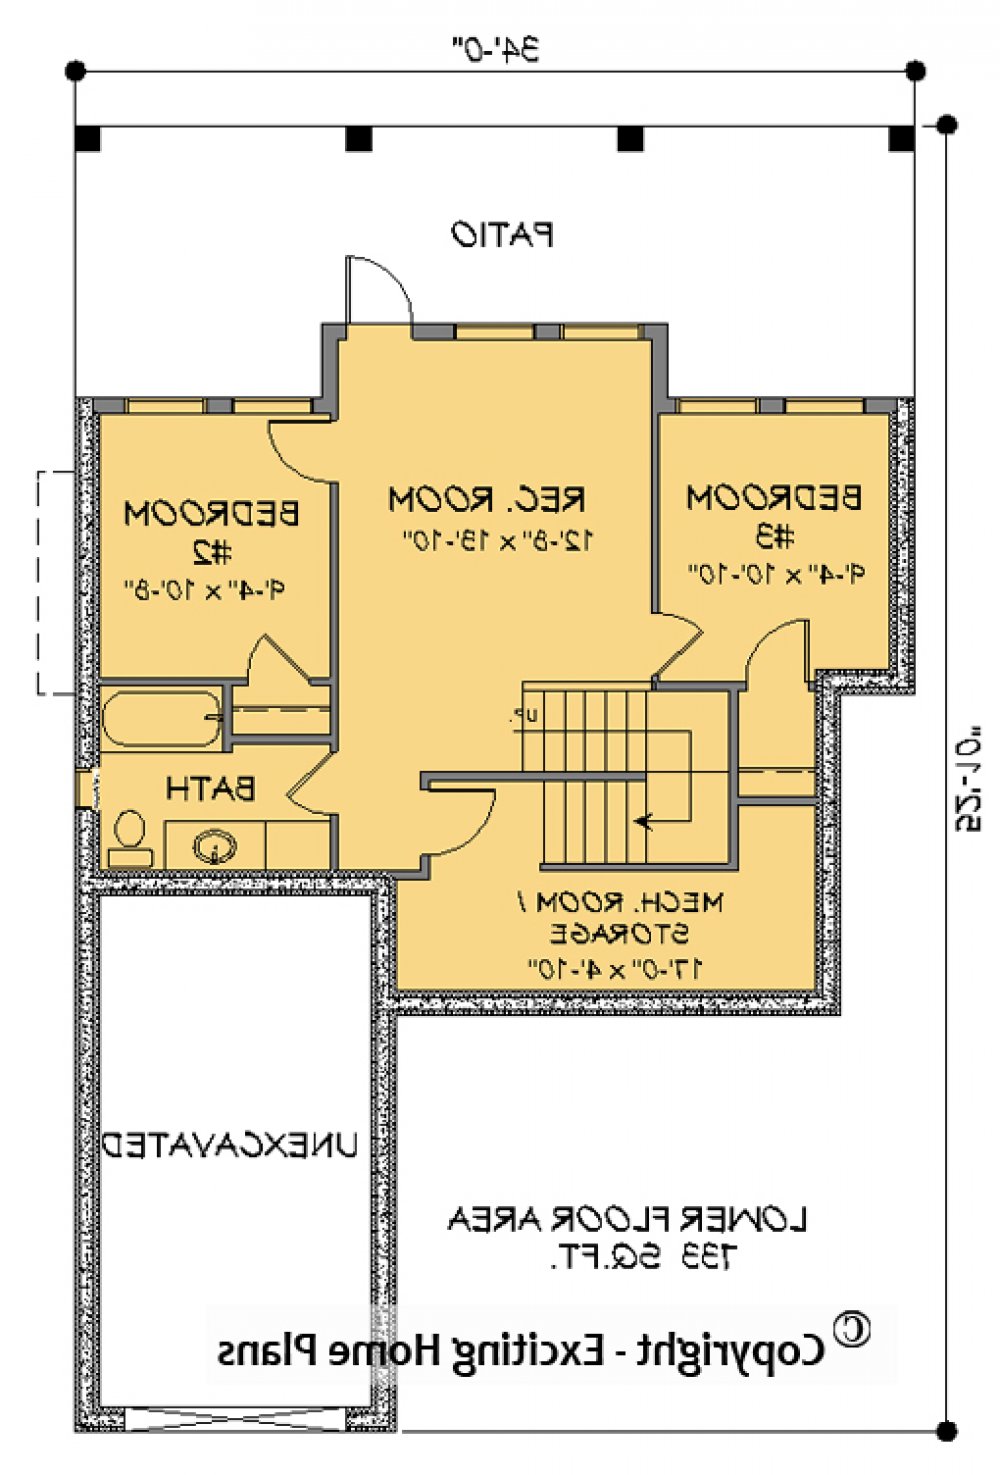 House Plan E1720  Lower Floor Plan REVERSE